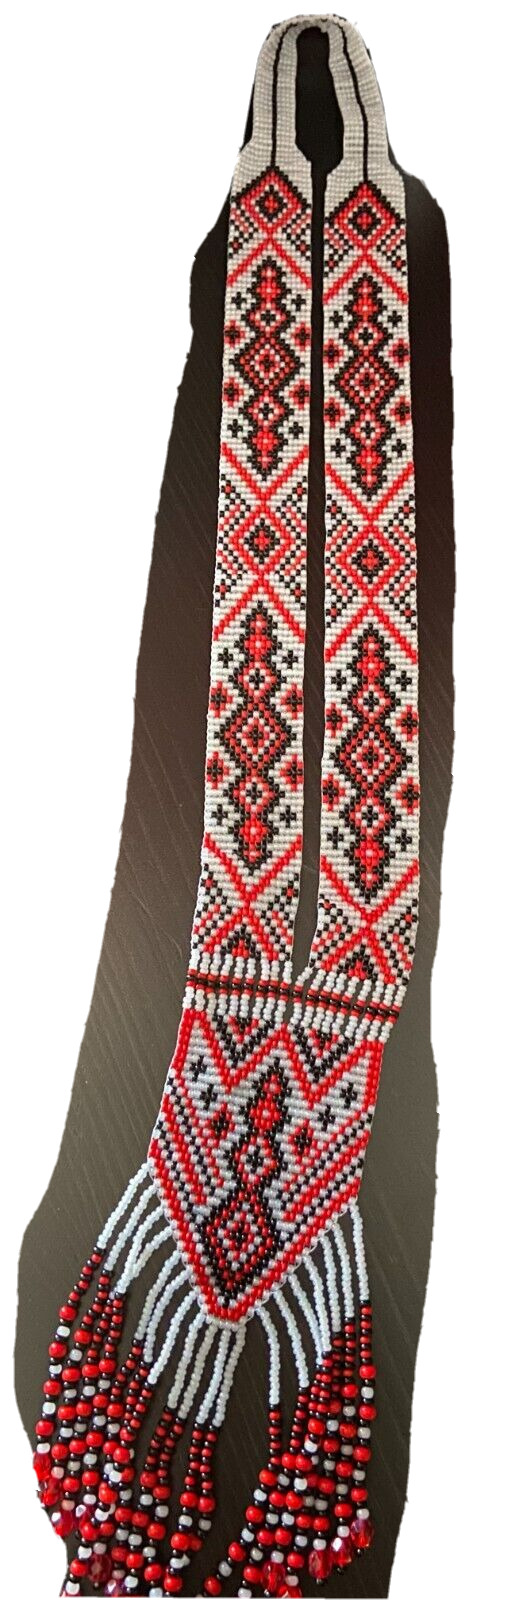 Ukraine Necklace Red & Black & White